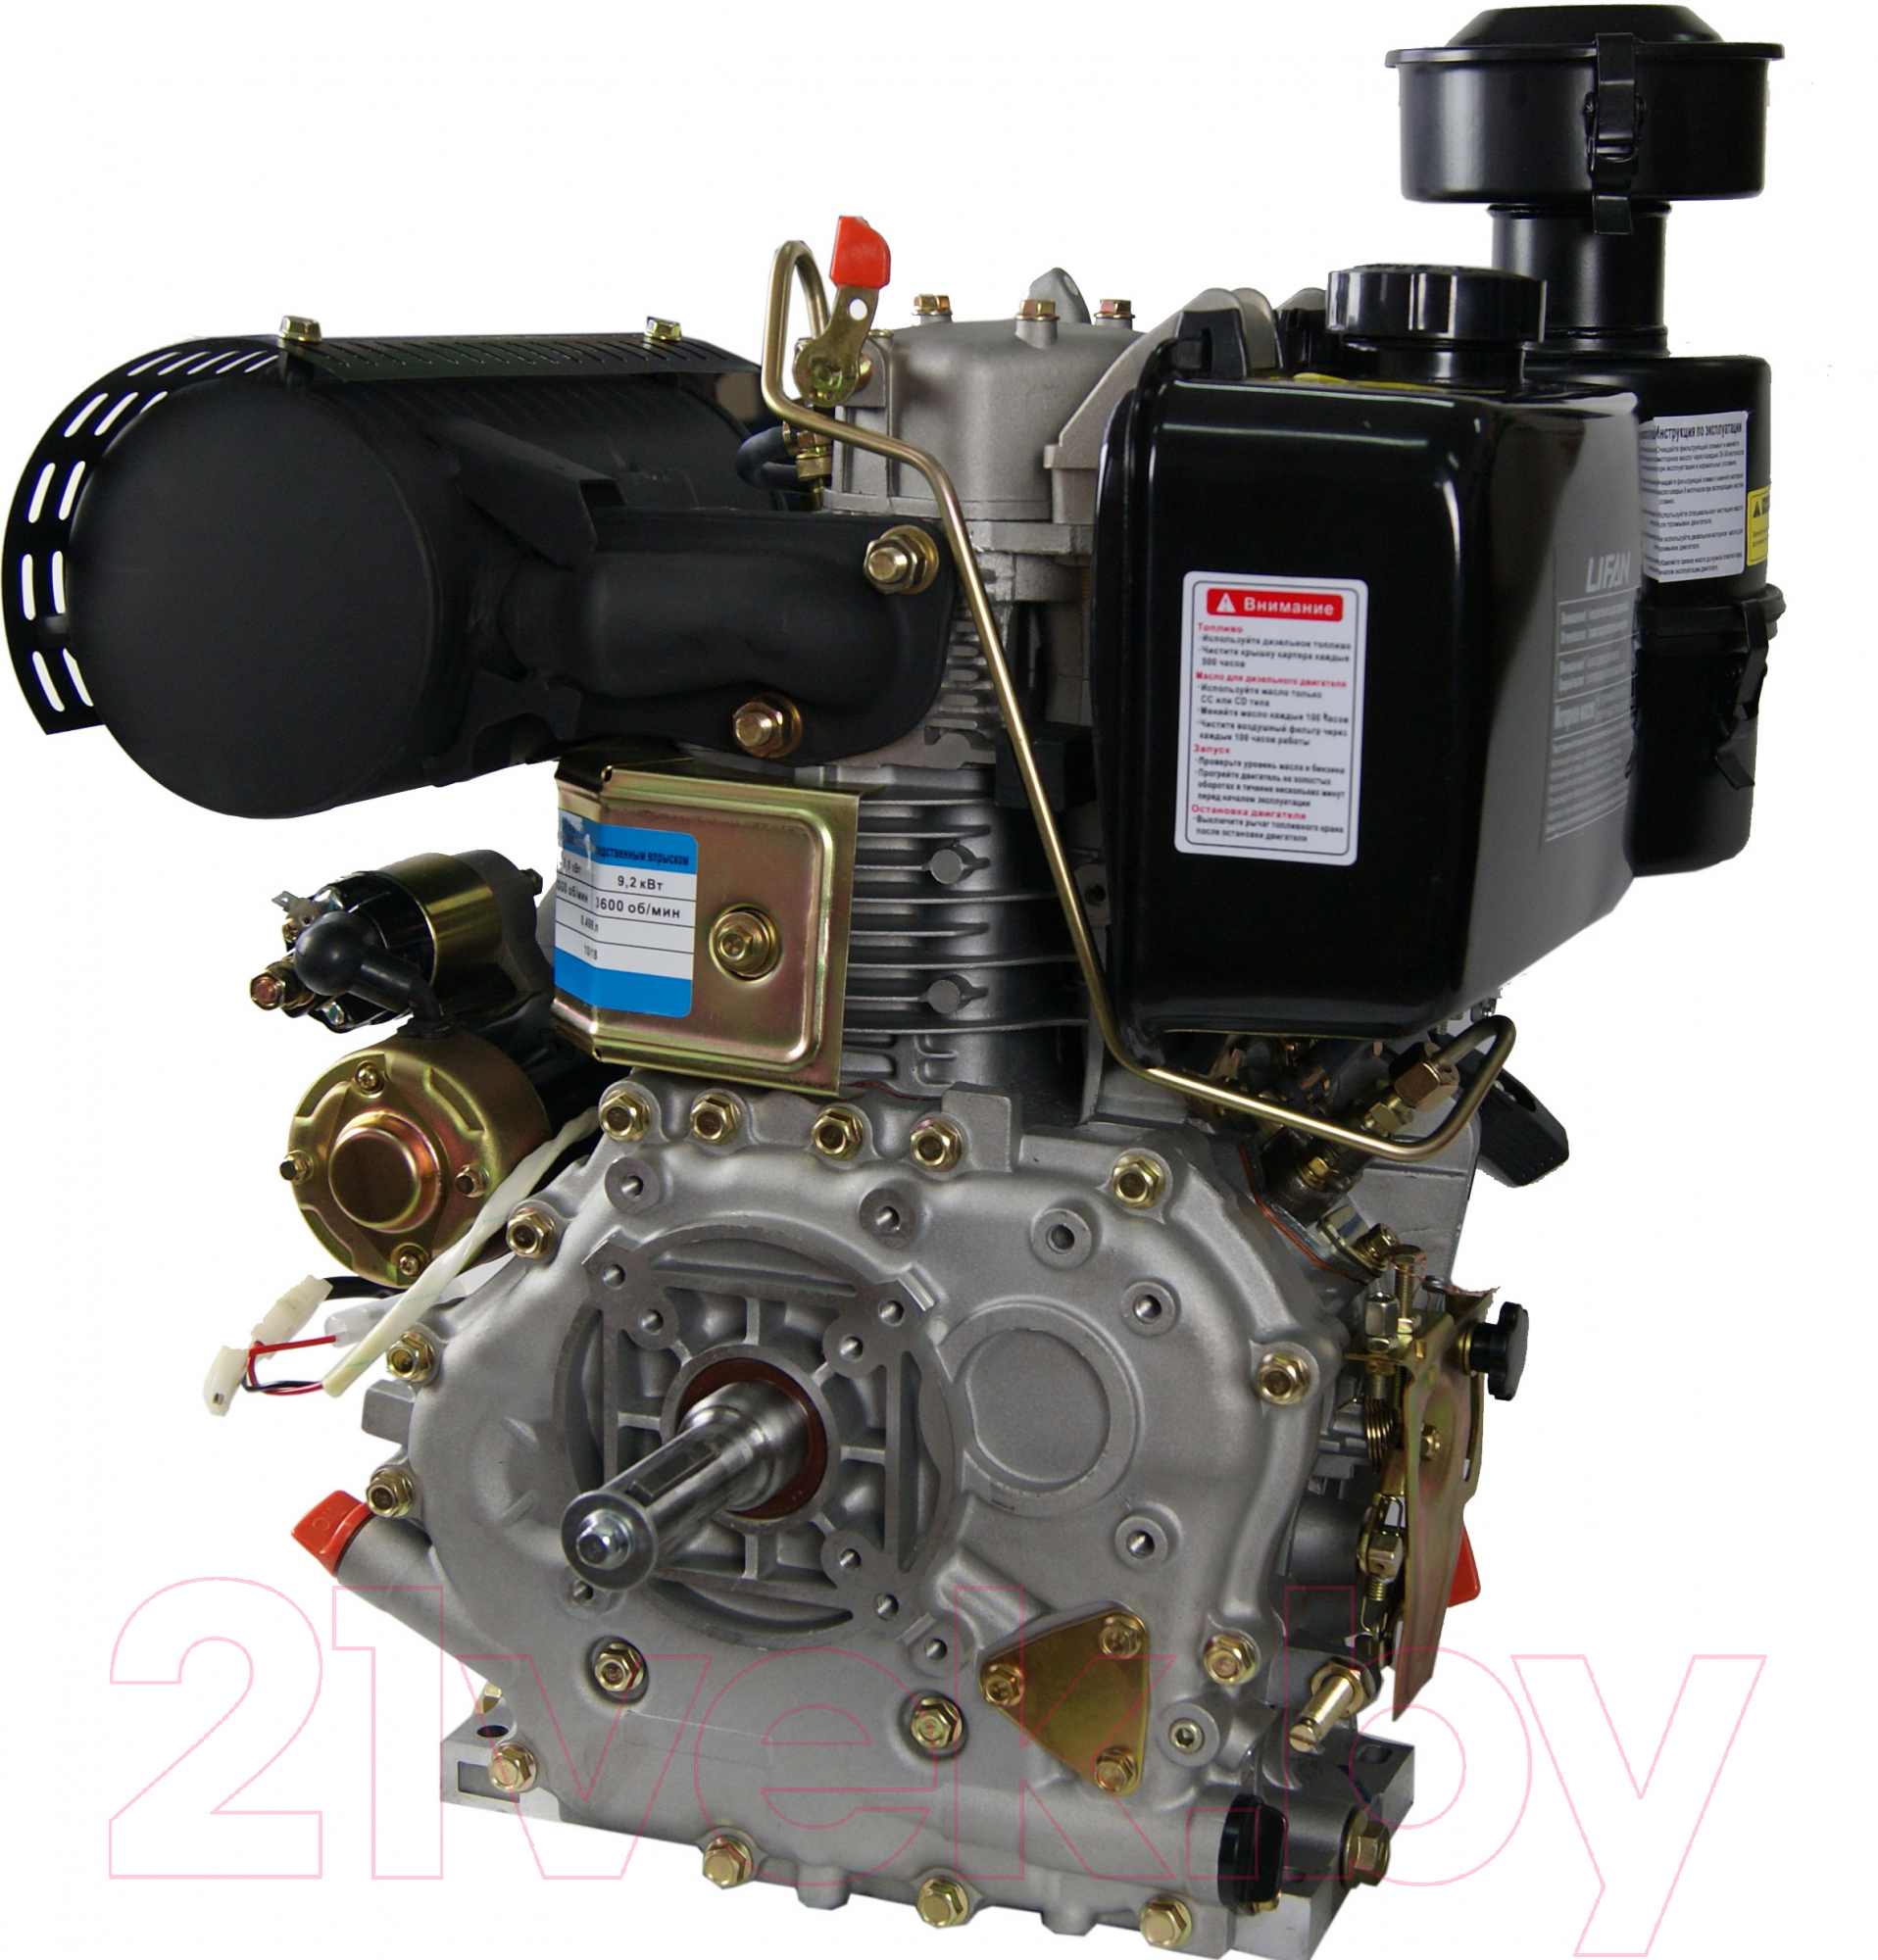 Двигатель дизельный Lifan C192FD / 6079